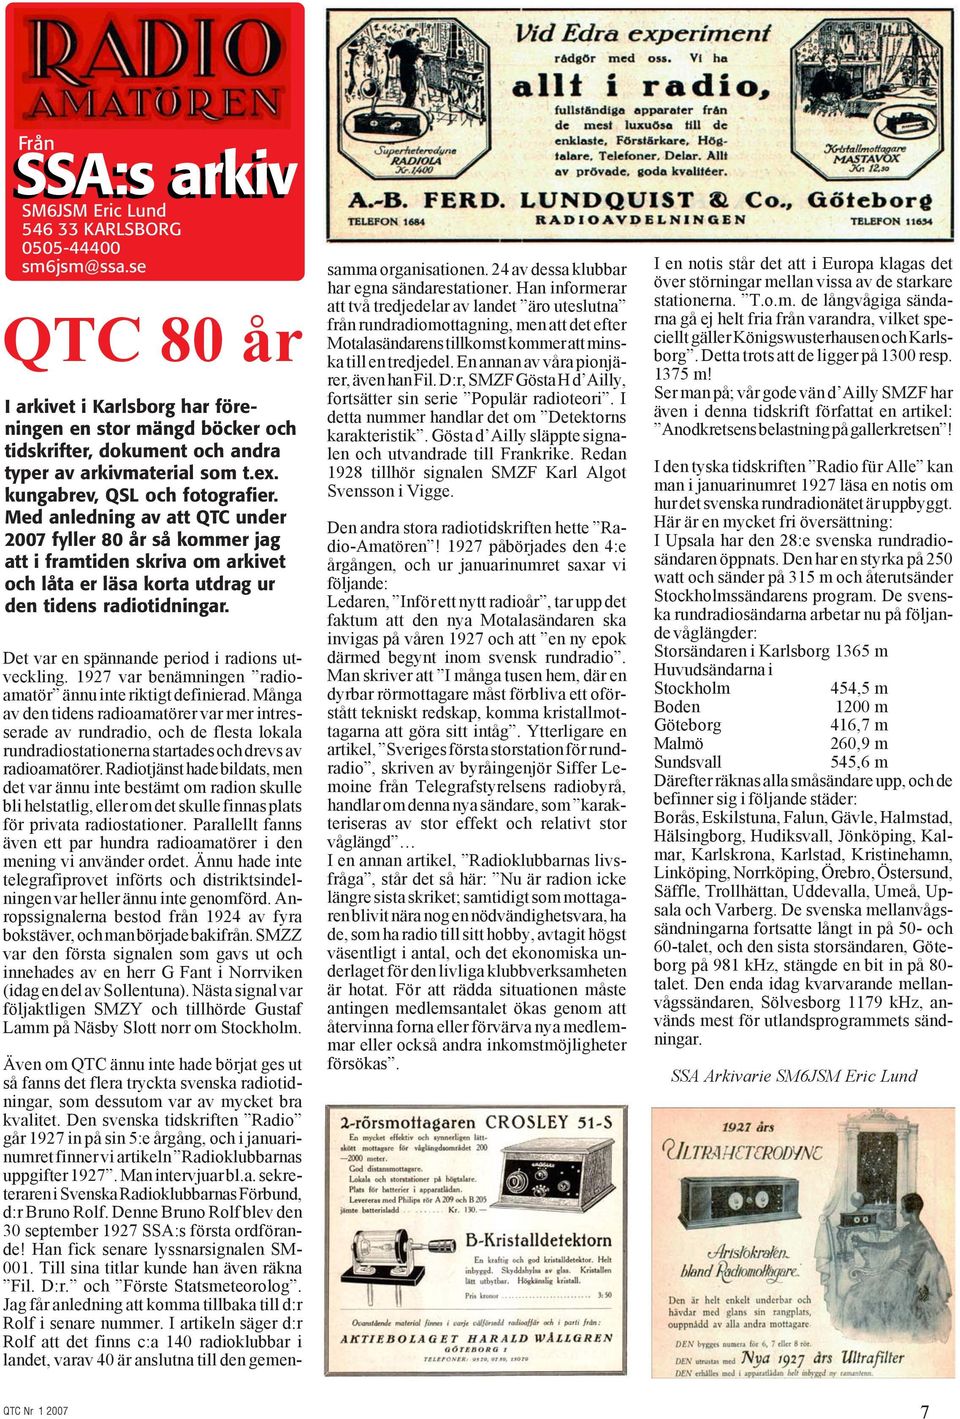 Med anledning av att QTC under 2007 fyller 80 år så kommer jag att i framtiden skriva om arkivet och låta er läsa korta utdrag ur den tidens radiotidningar.